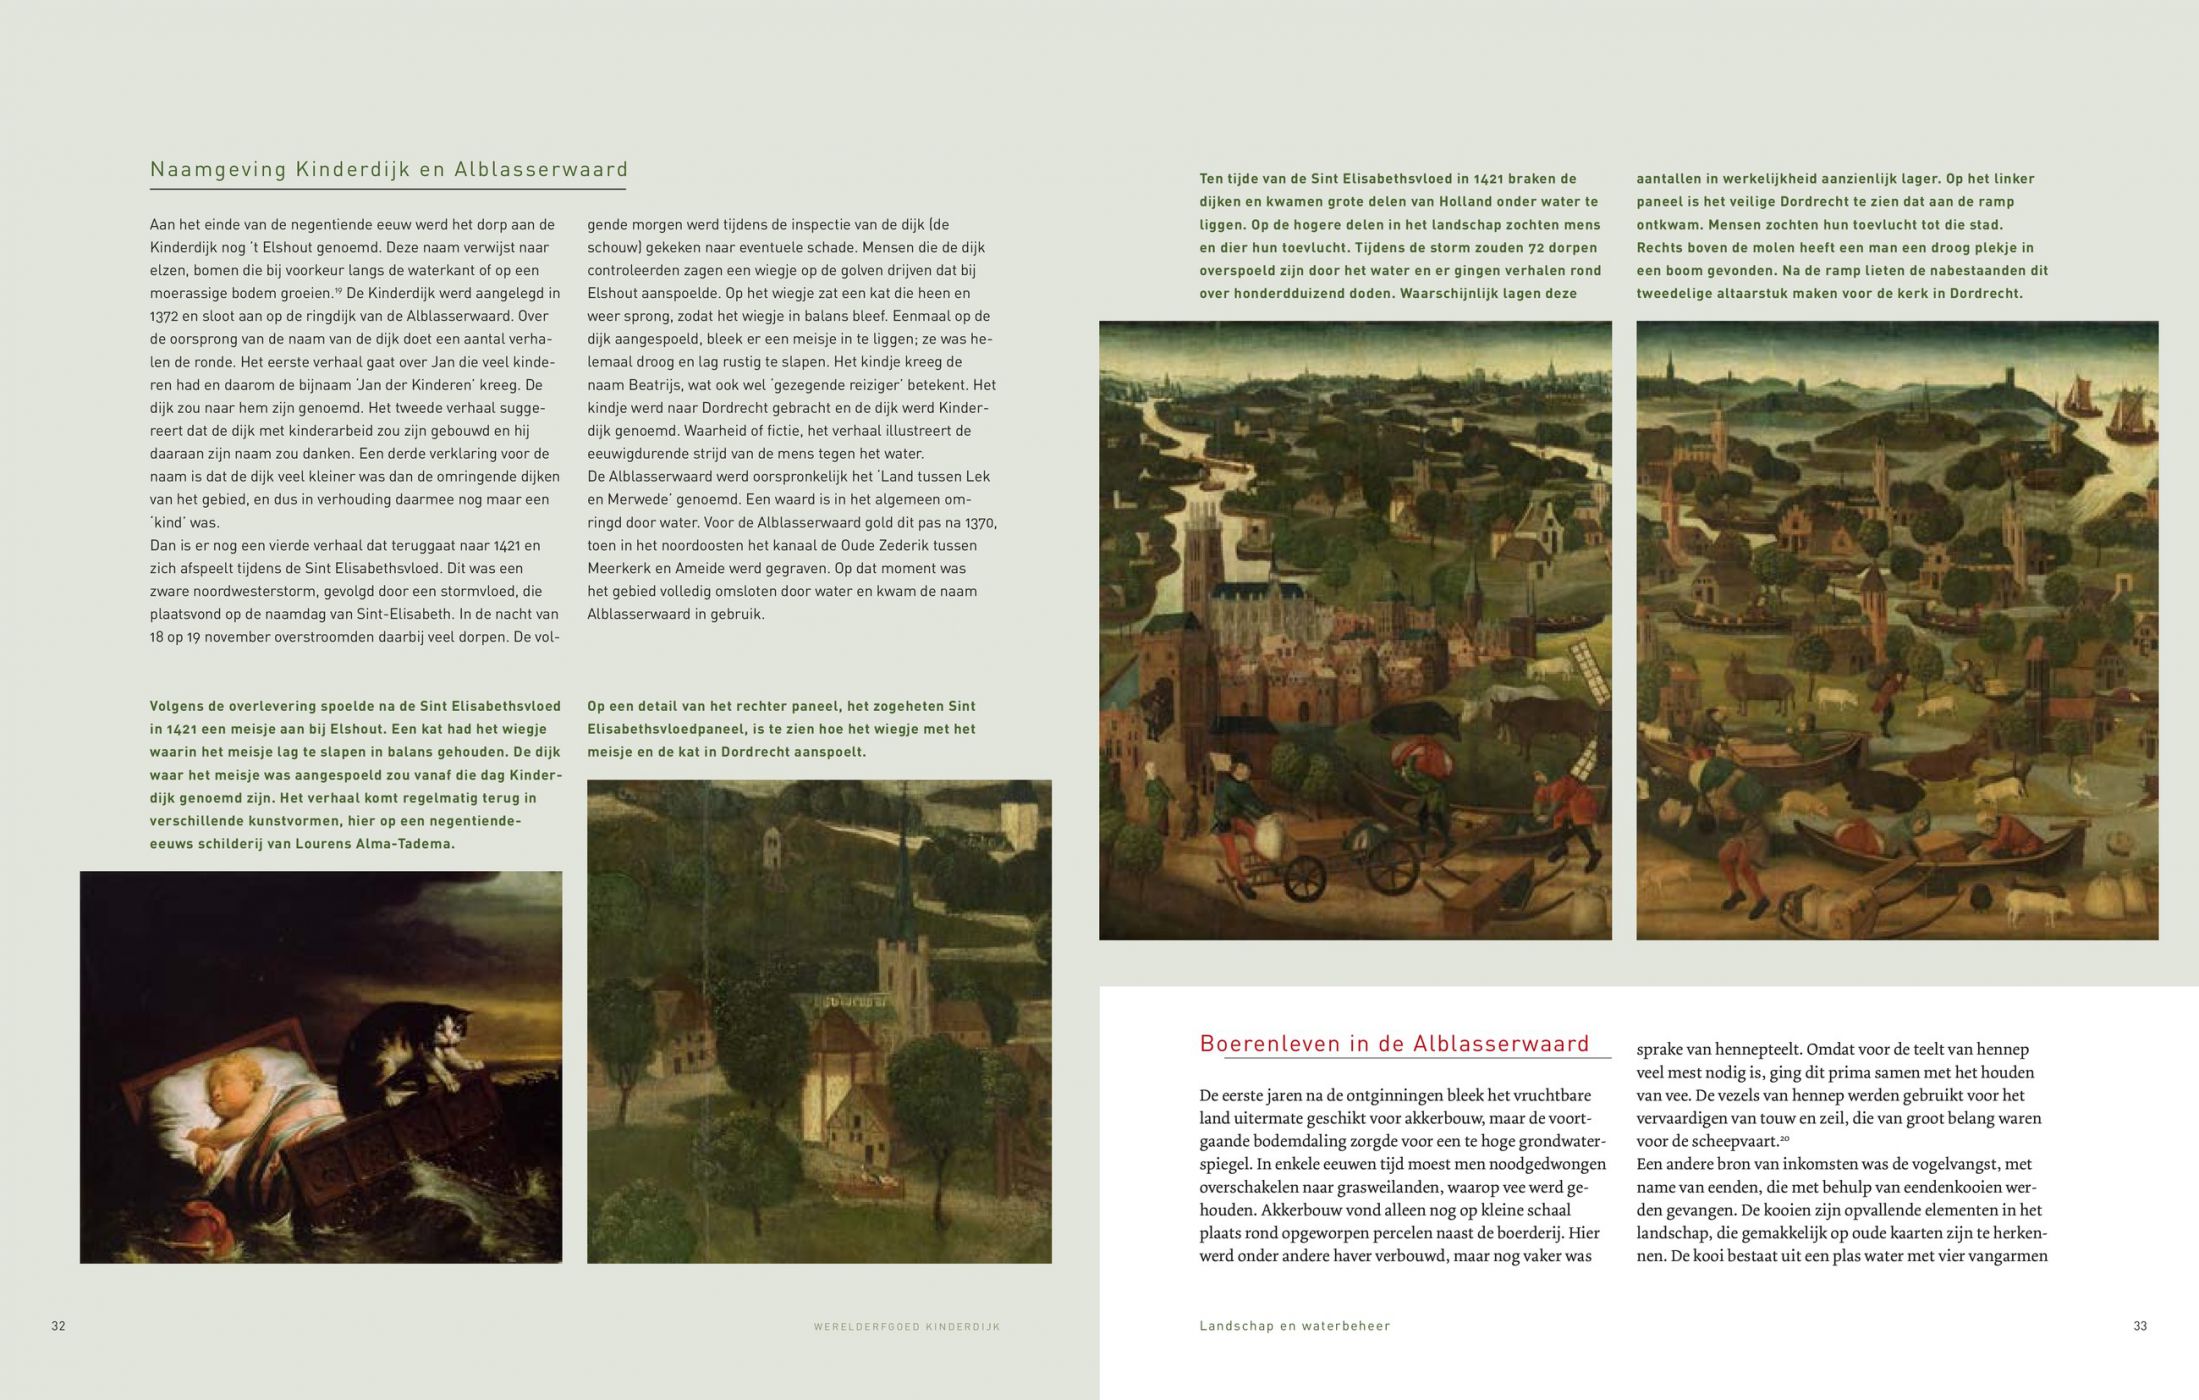 Inkijkexemplaar van het boek: <em>Werelderfgoed Kinderdijk. Molens, water en gemalen</em> - © Uitgeverij Matrijs